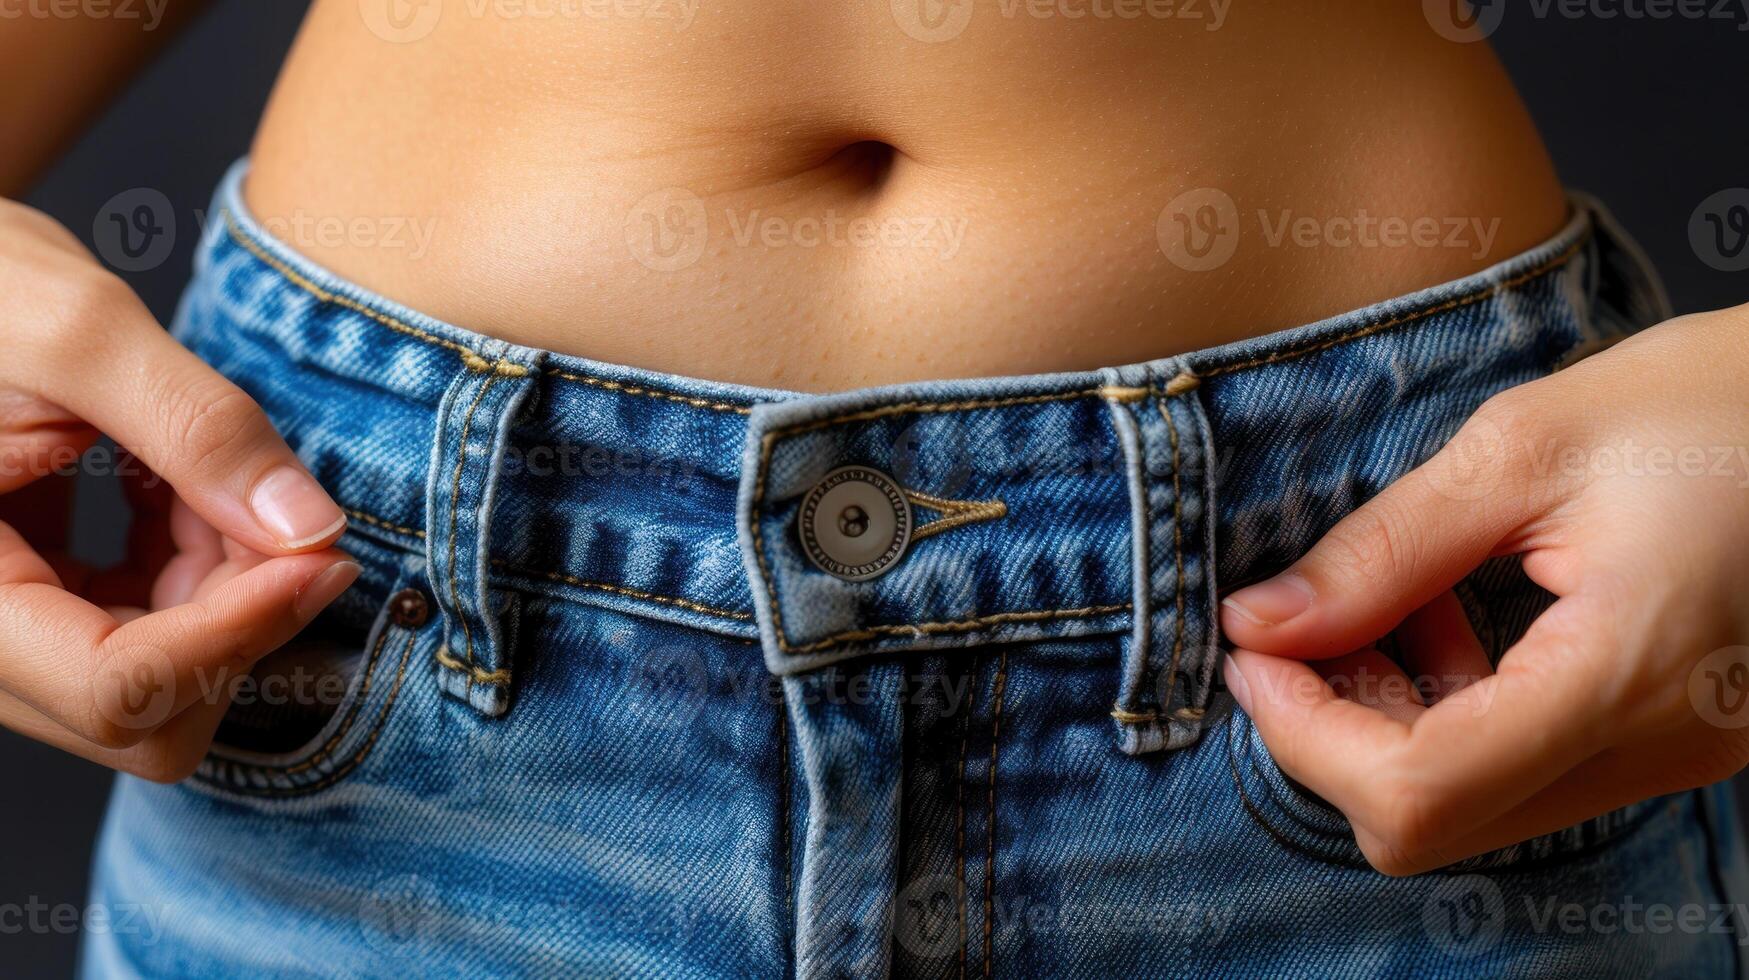 närbild av en kvinnors mage med en knapp synlig i de ficka av henne byxor foto